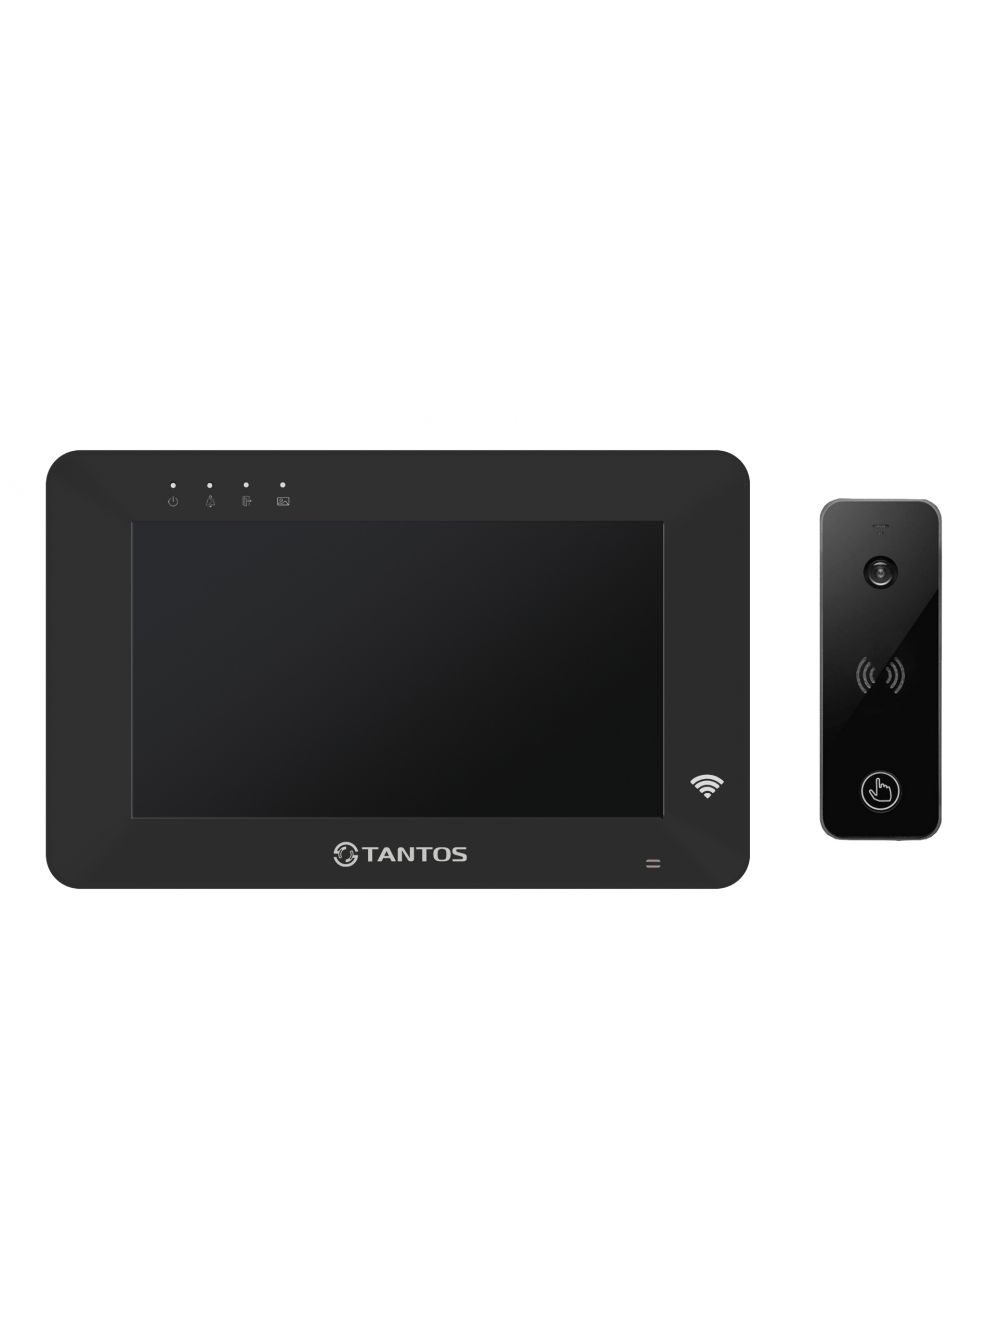 Комплект видеодомофона Tantos Rocky HD Wi-Fi (черный) и iPanel 2 HD (черная) видеоглазок дверной rexant dv 112 с цветным lcd дисплеем 2 8 с функцией записи фото зво